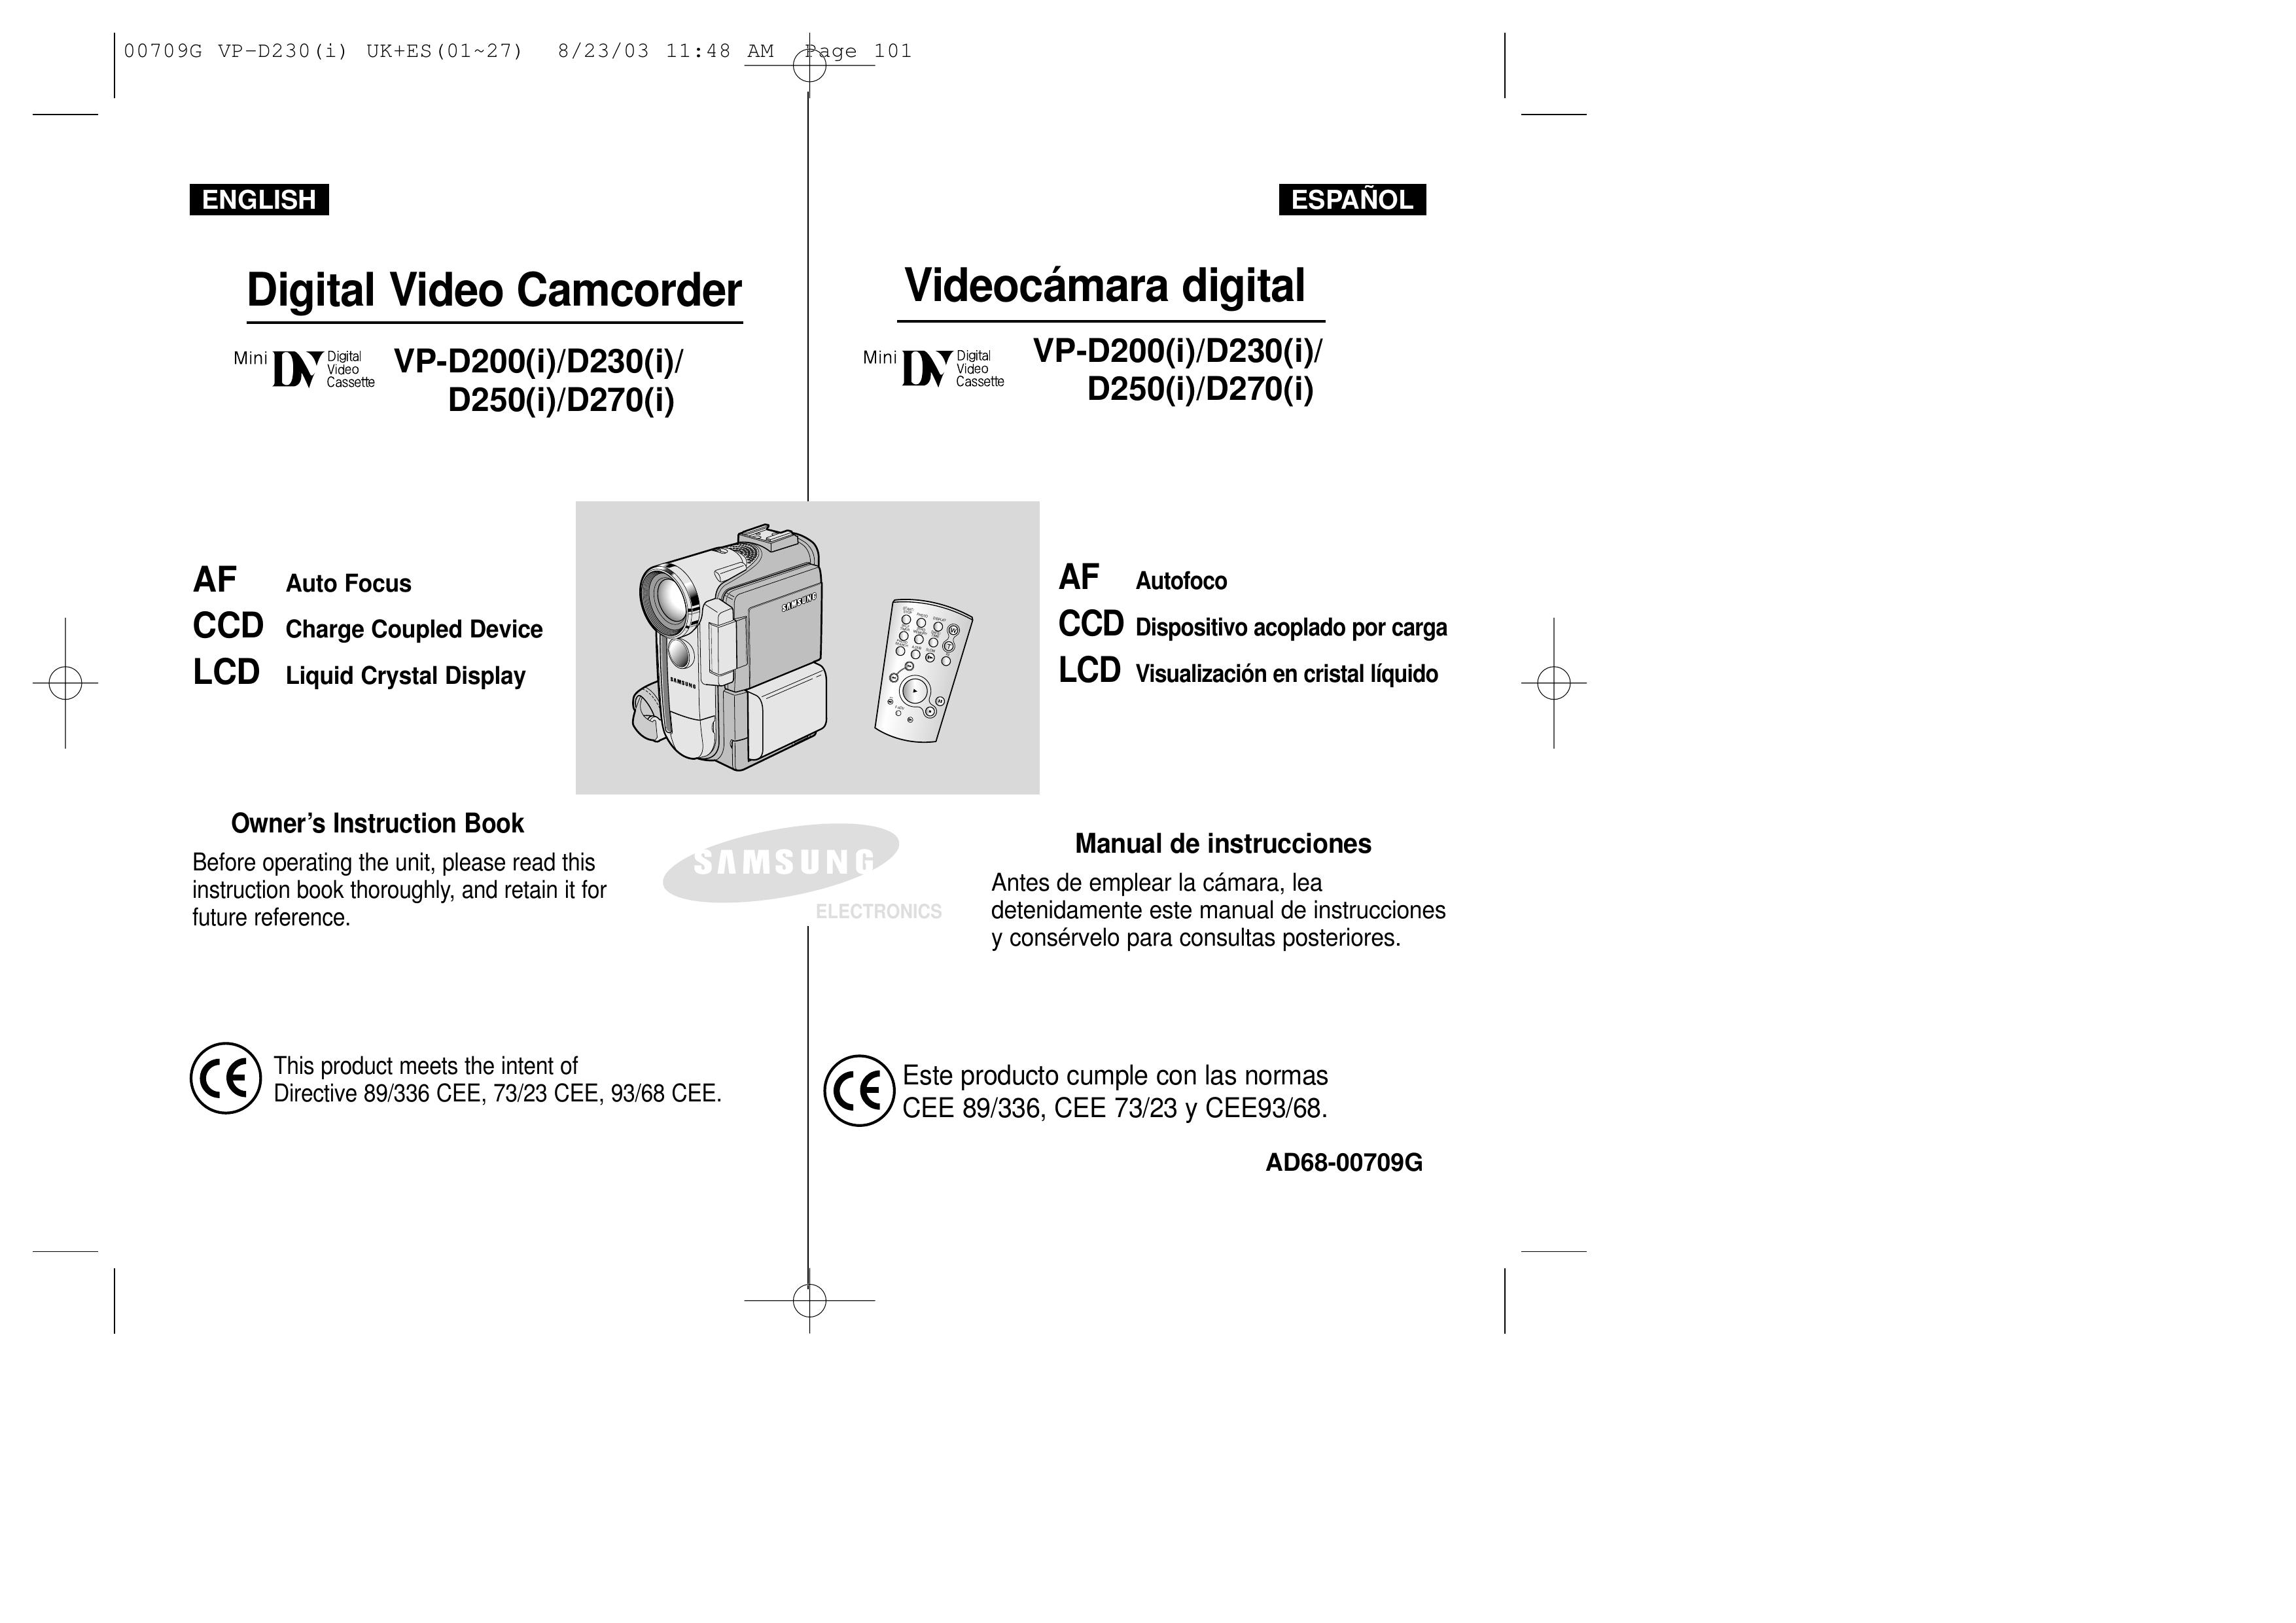 Samsung D230(i) Camcorder User Manual